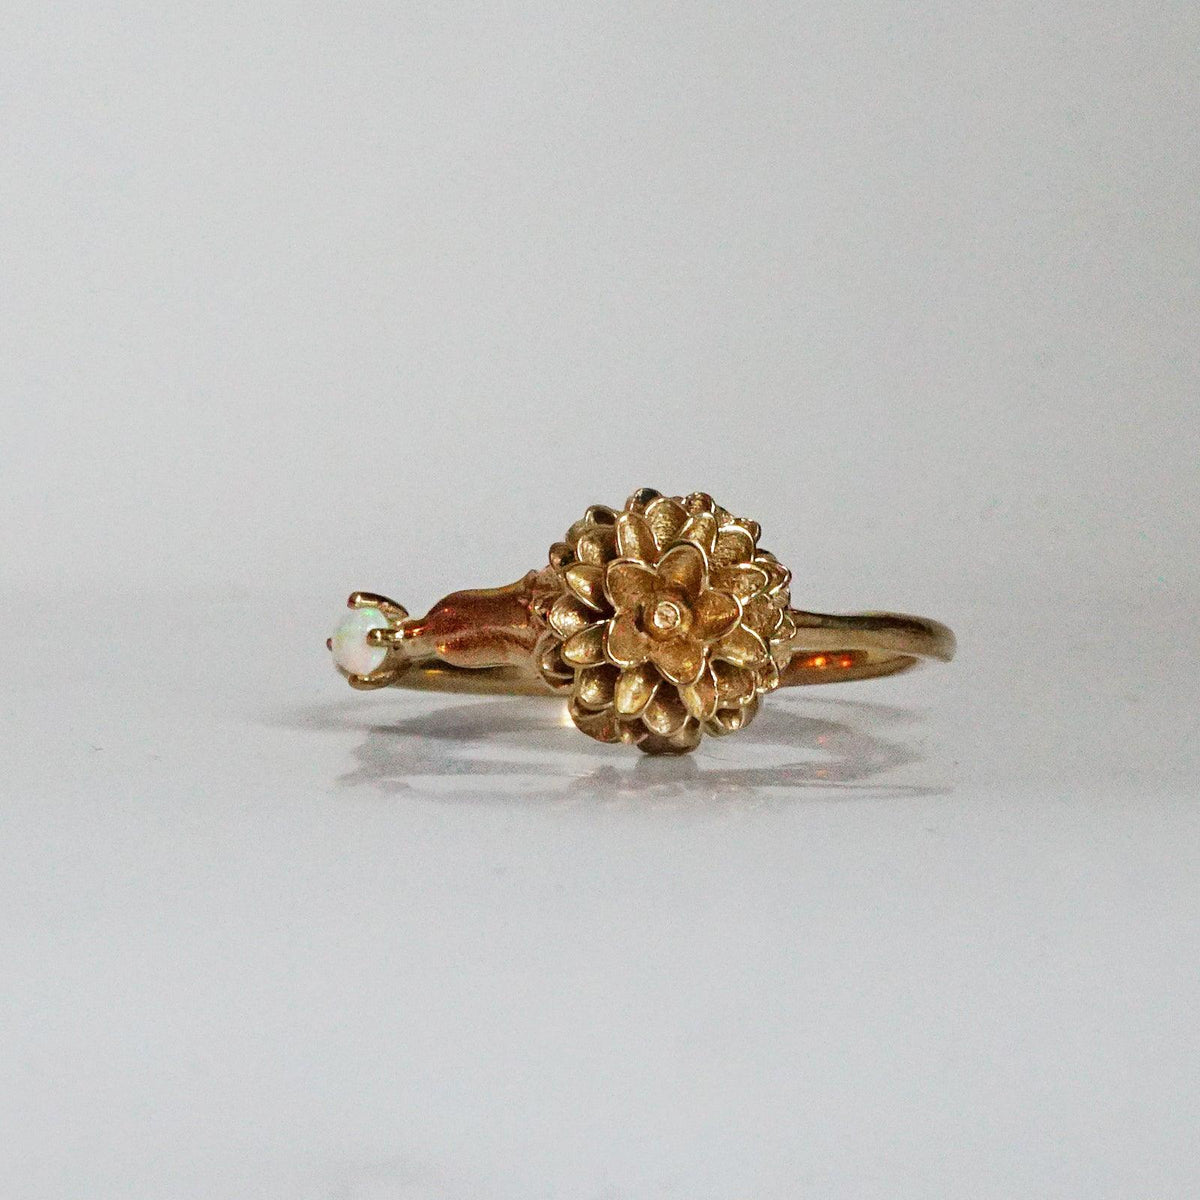 October Marigold Birth Flower Ring